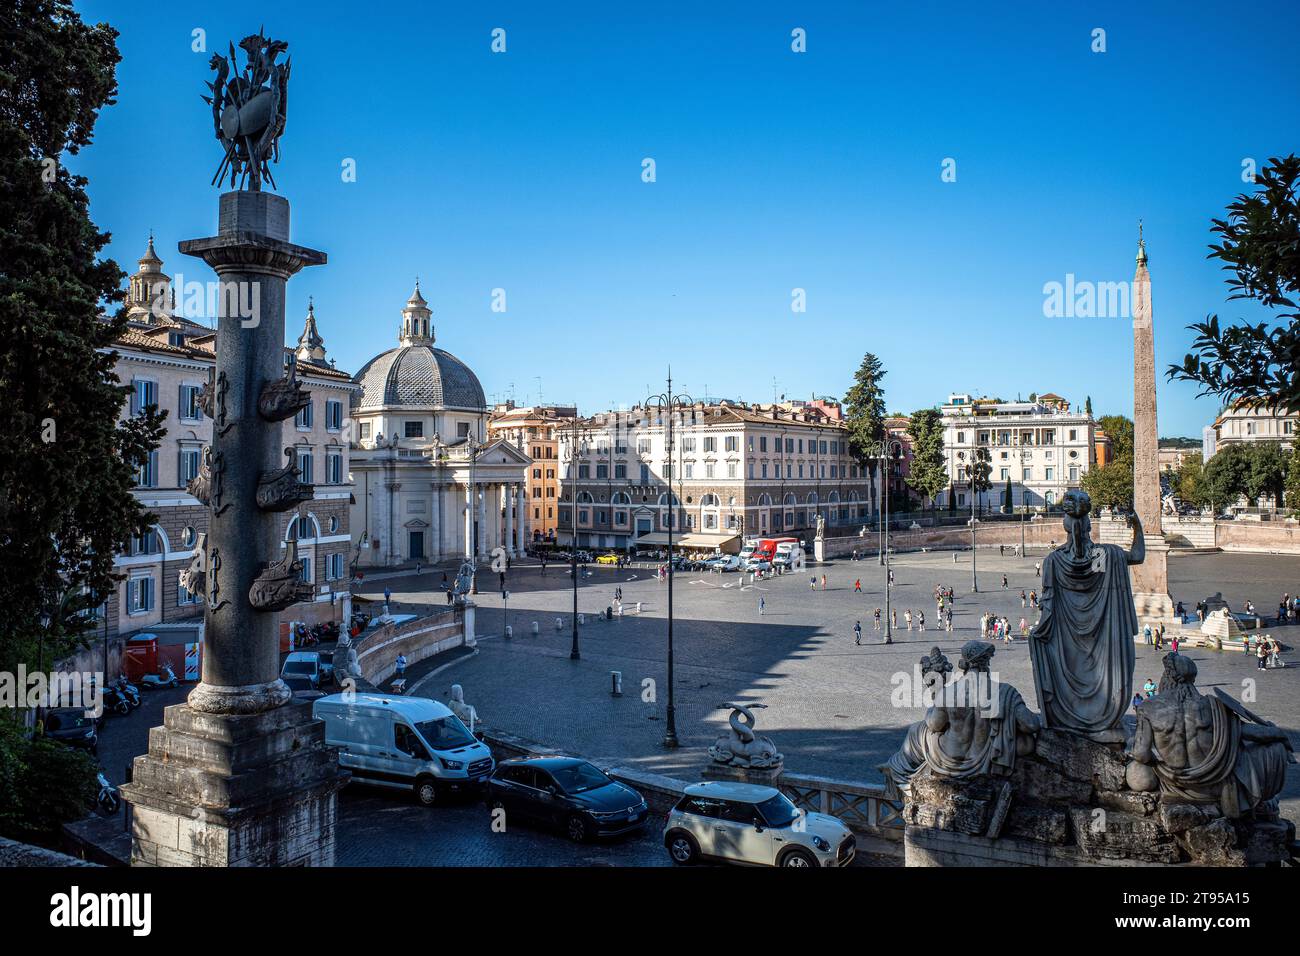 Piazza del Popolo Rome Italy Stock Photo